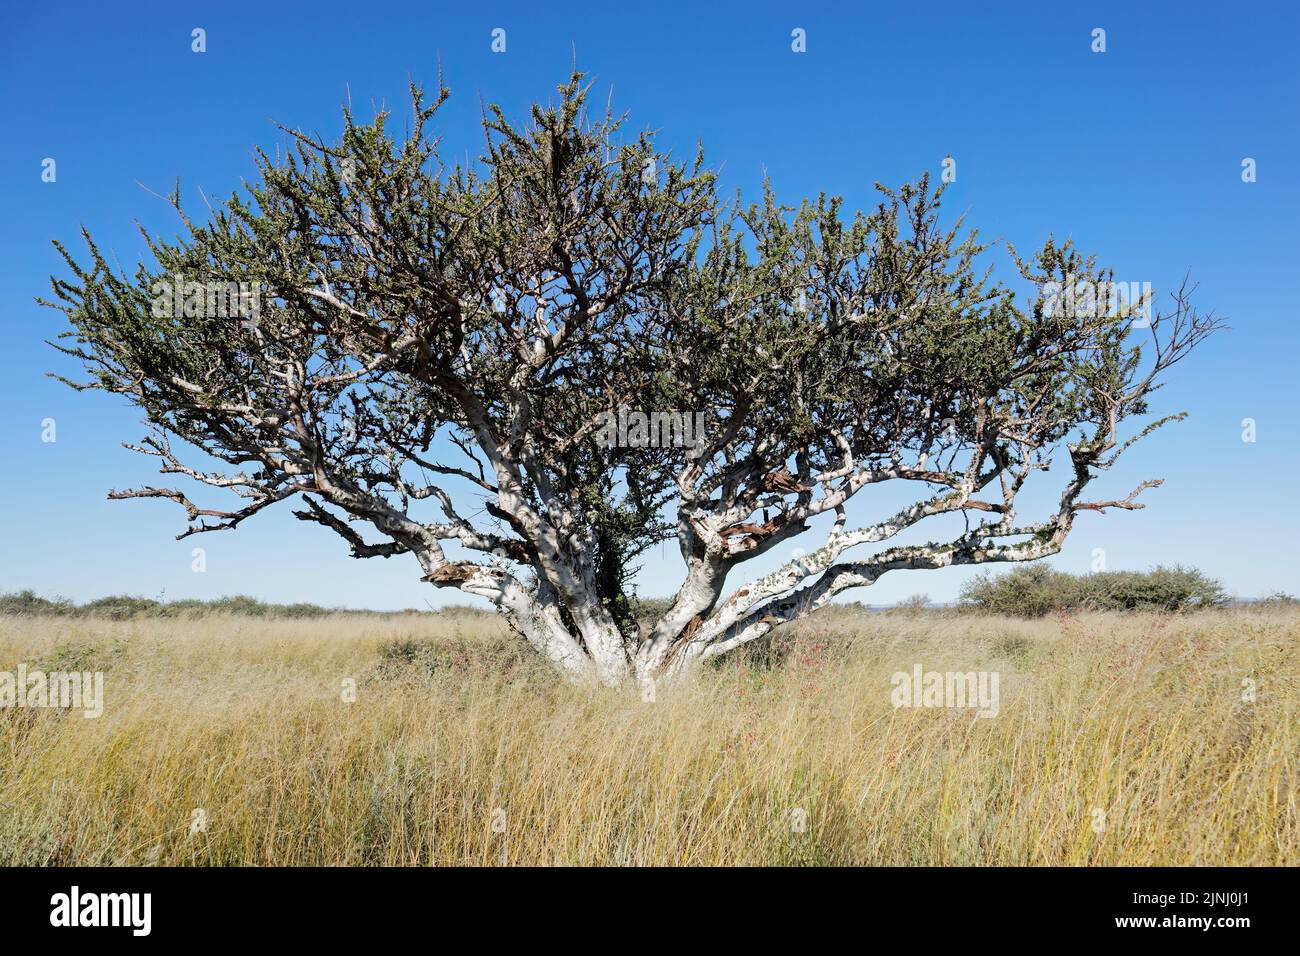 Los pastores africanos tree (Boscia albitrunca) en pastizales contra un cielo azul, Sudáfrica Foto de stock